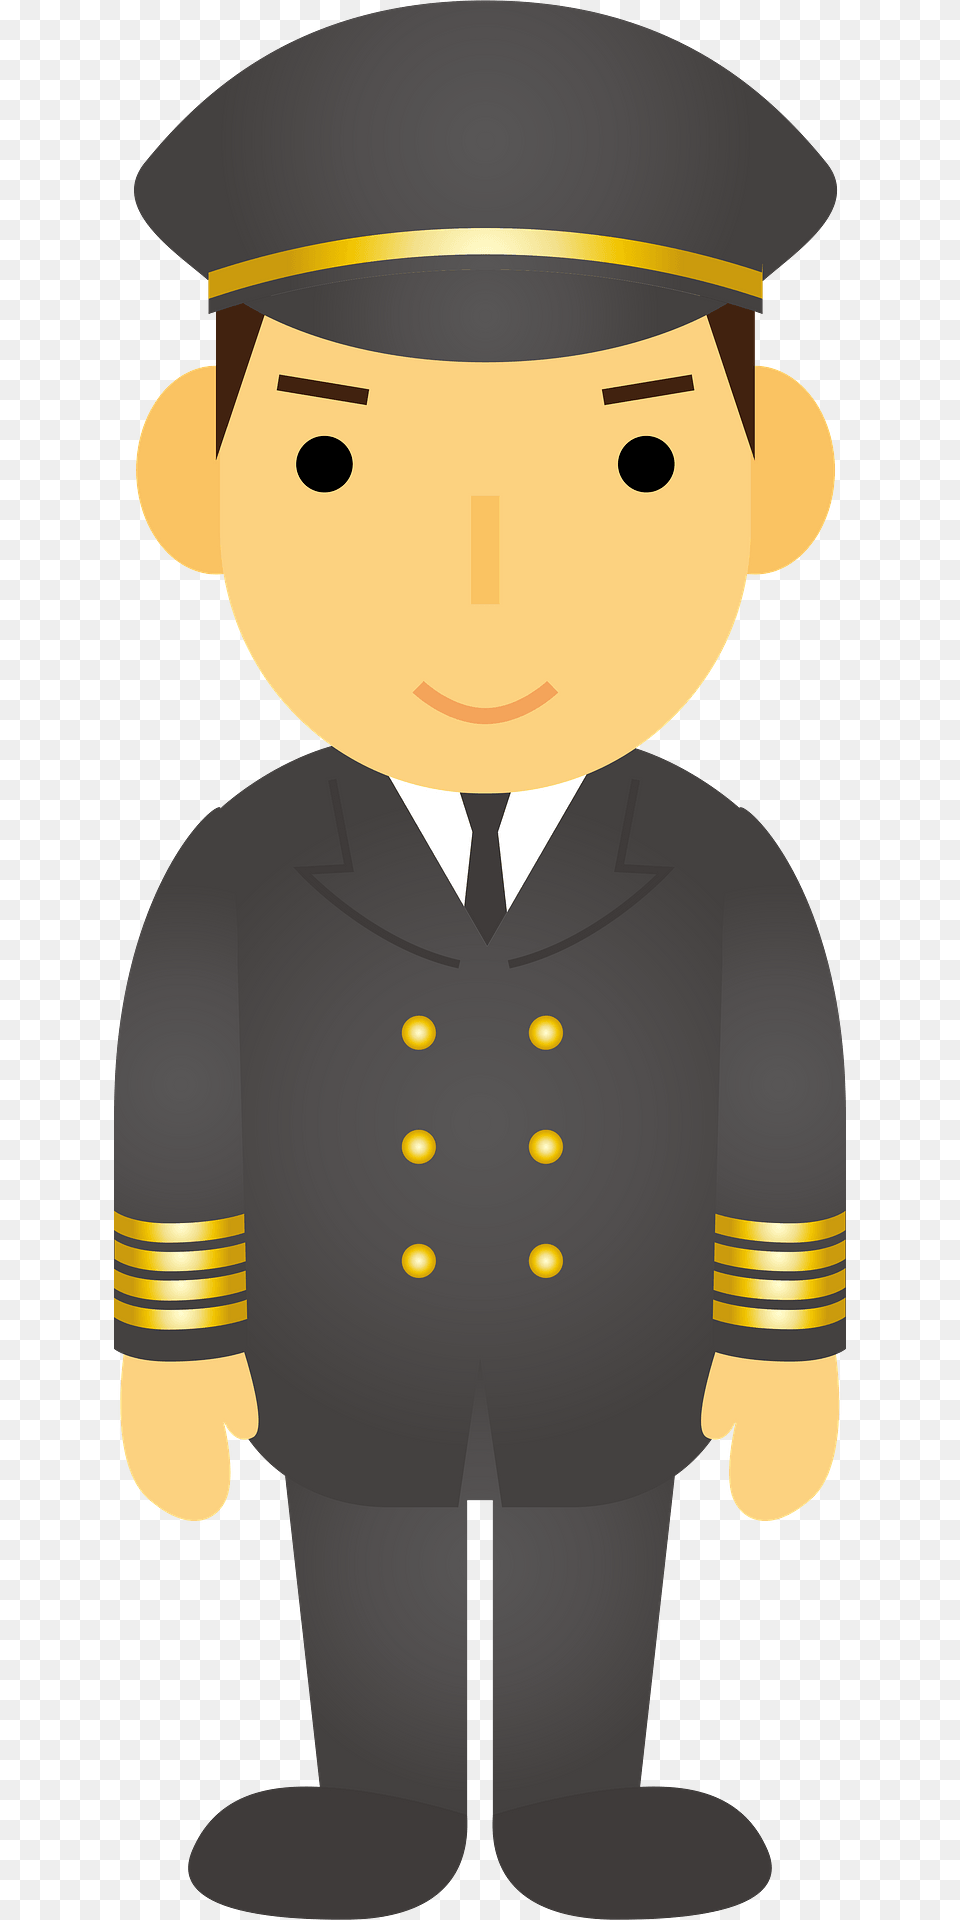 Pilot Man Clipart, Captain, Officer, Person, Face Free Transparent Png